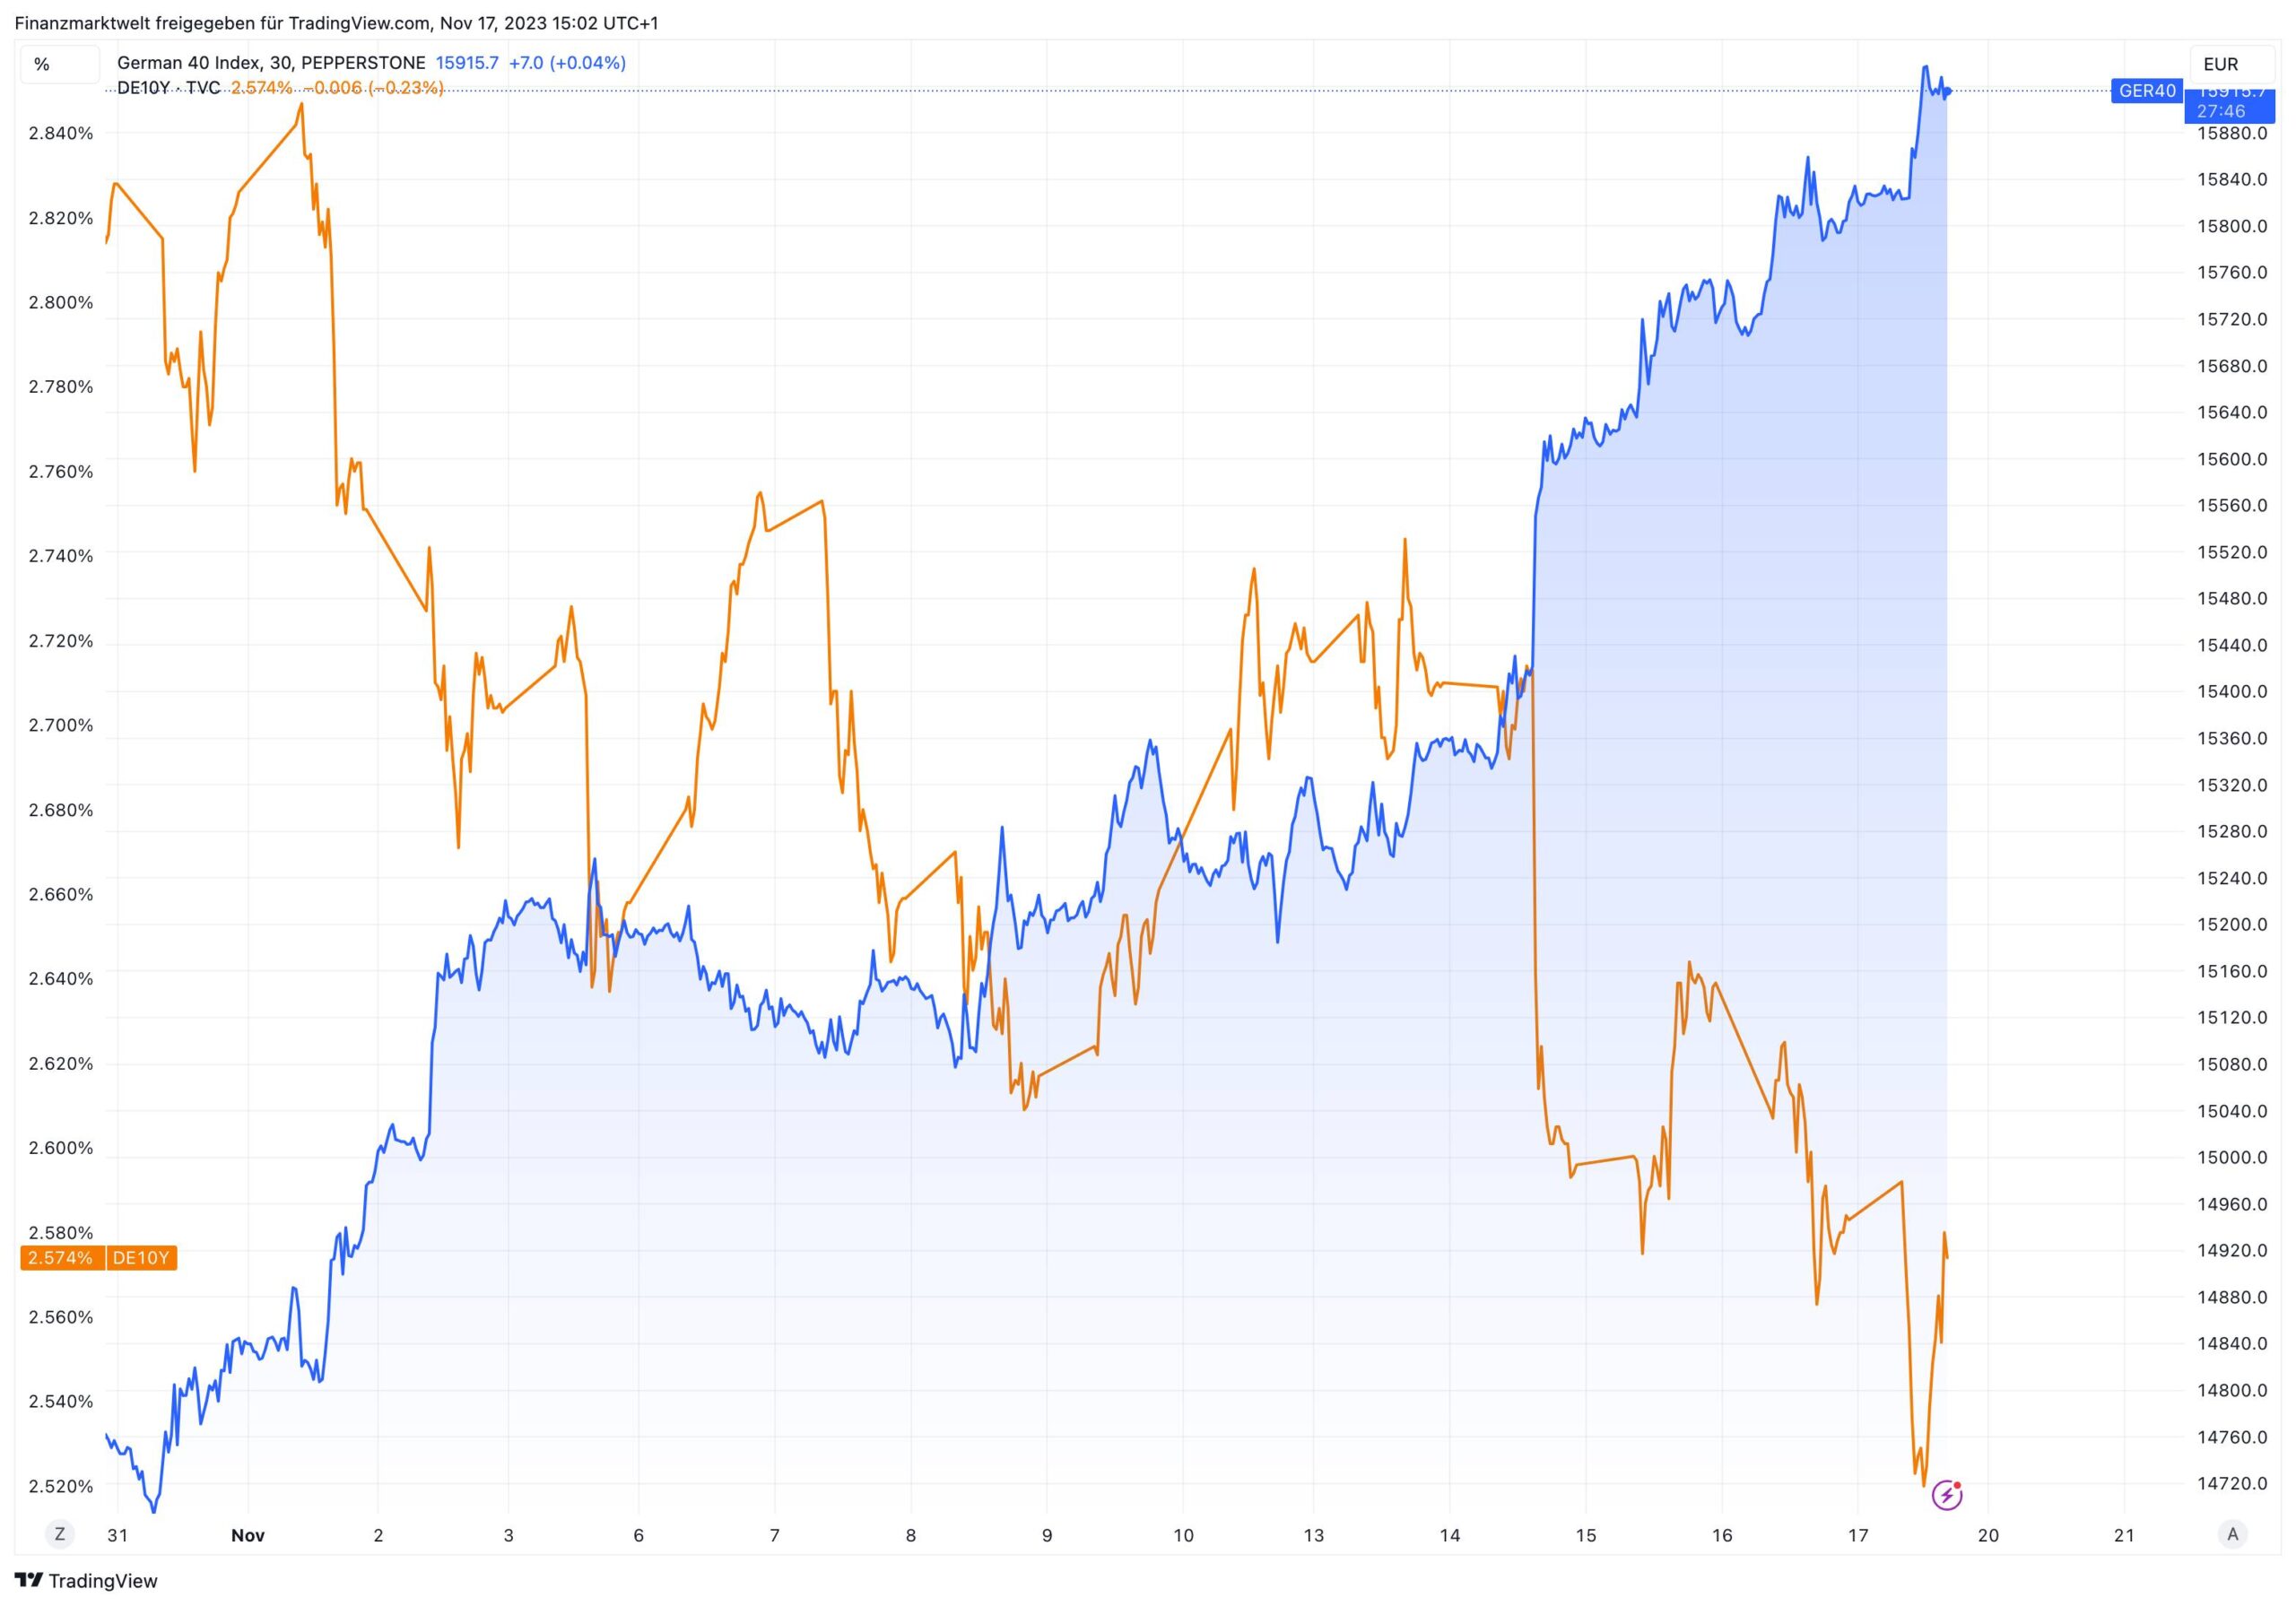 Dax-Verlauf in den letzten beiden Wochen im Vergleich zu deutschen Anleiherenditen